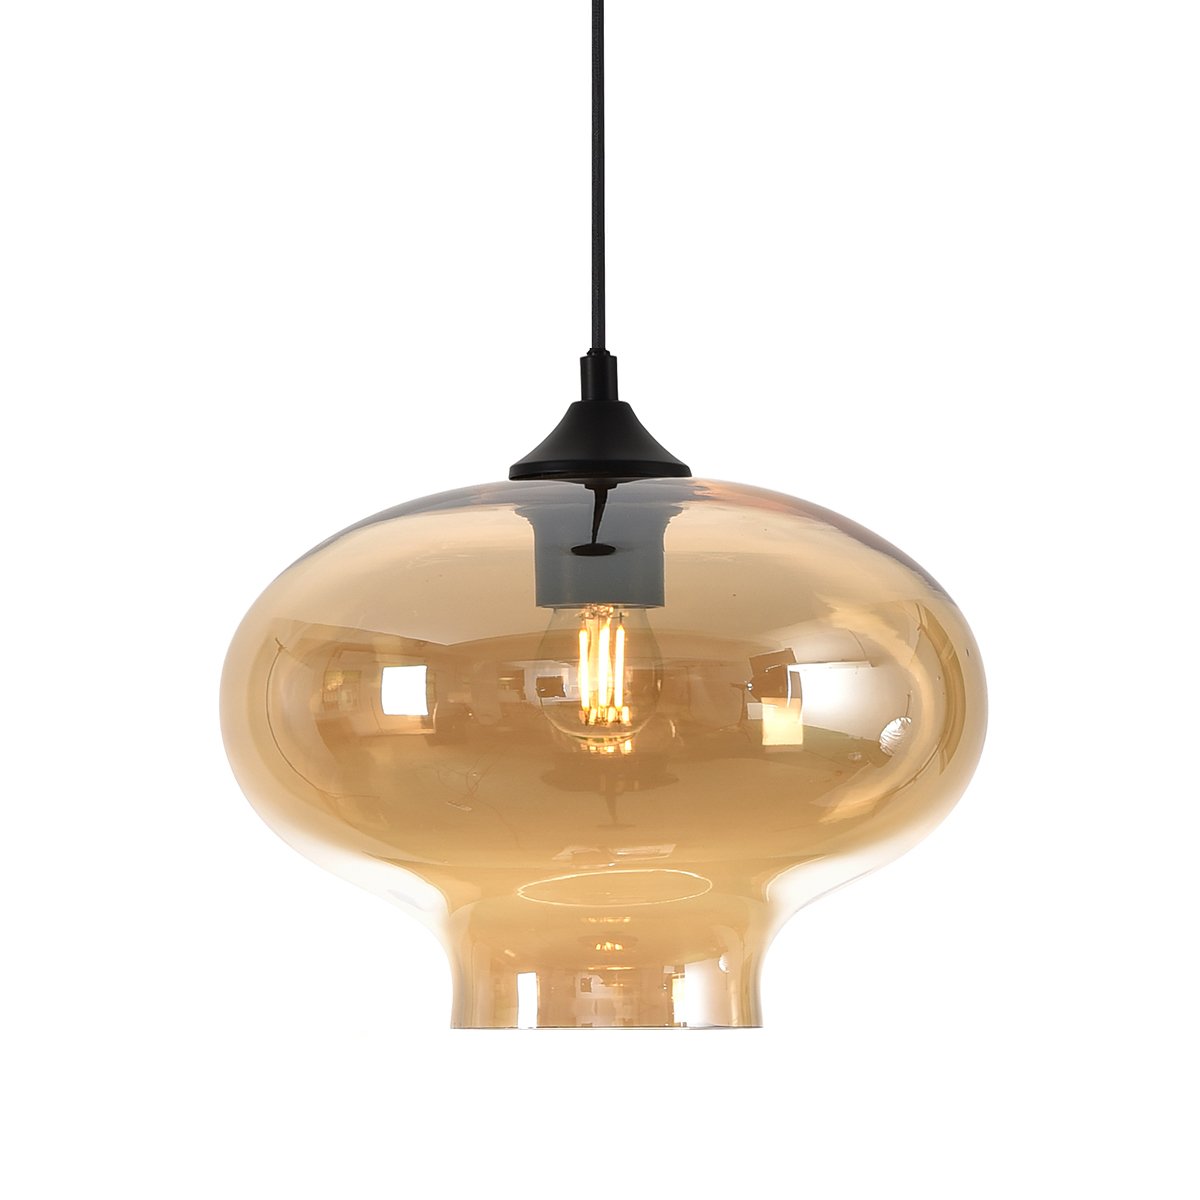 Binnenverlichting Hanglamp design goud glas Cembra - Ø 26.5 cm